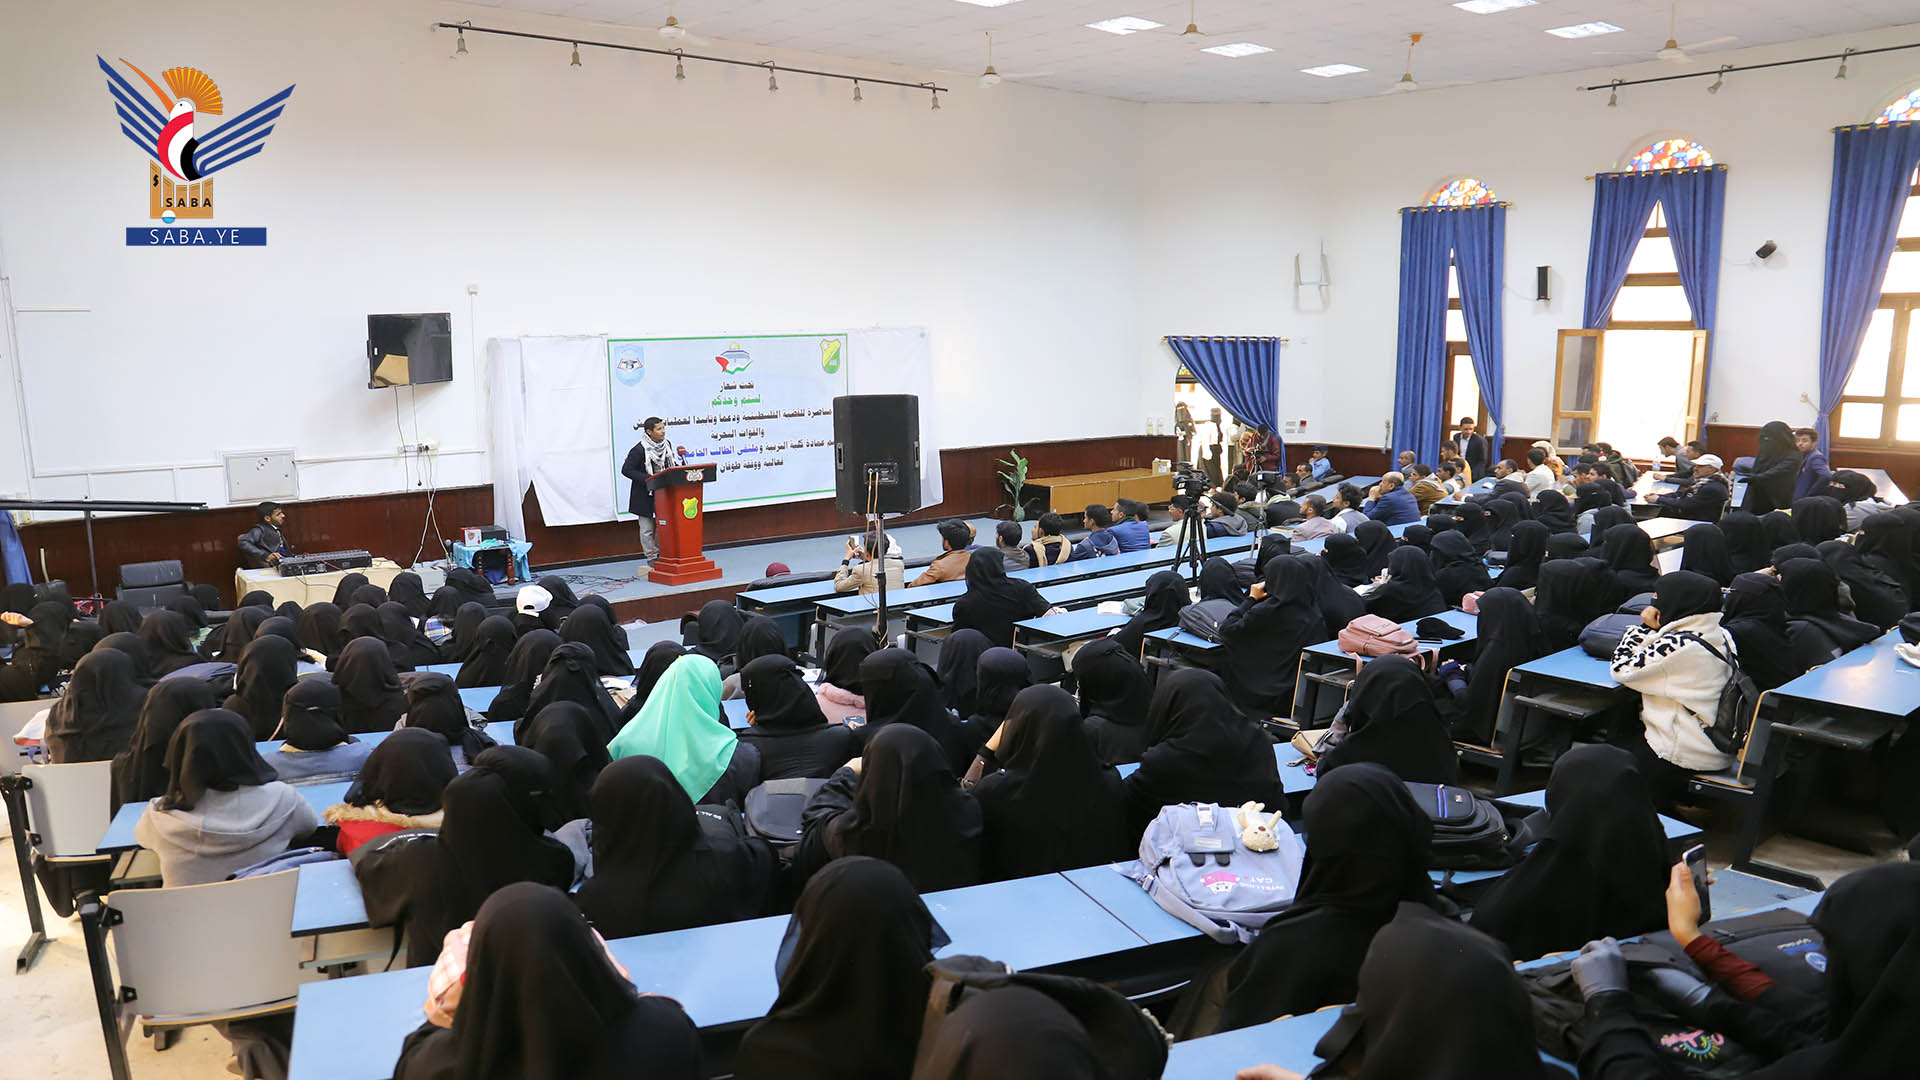 فعالية خطابية ووقفة تضامنية مع فلسطين بكلية التربية جامعة صنعاء